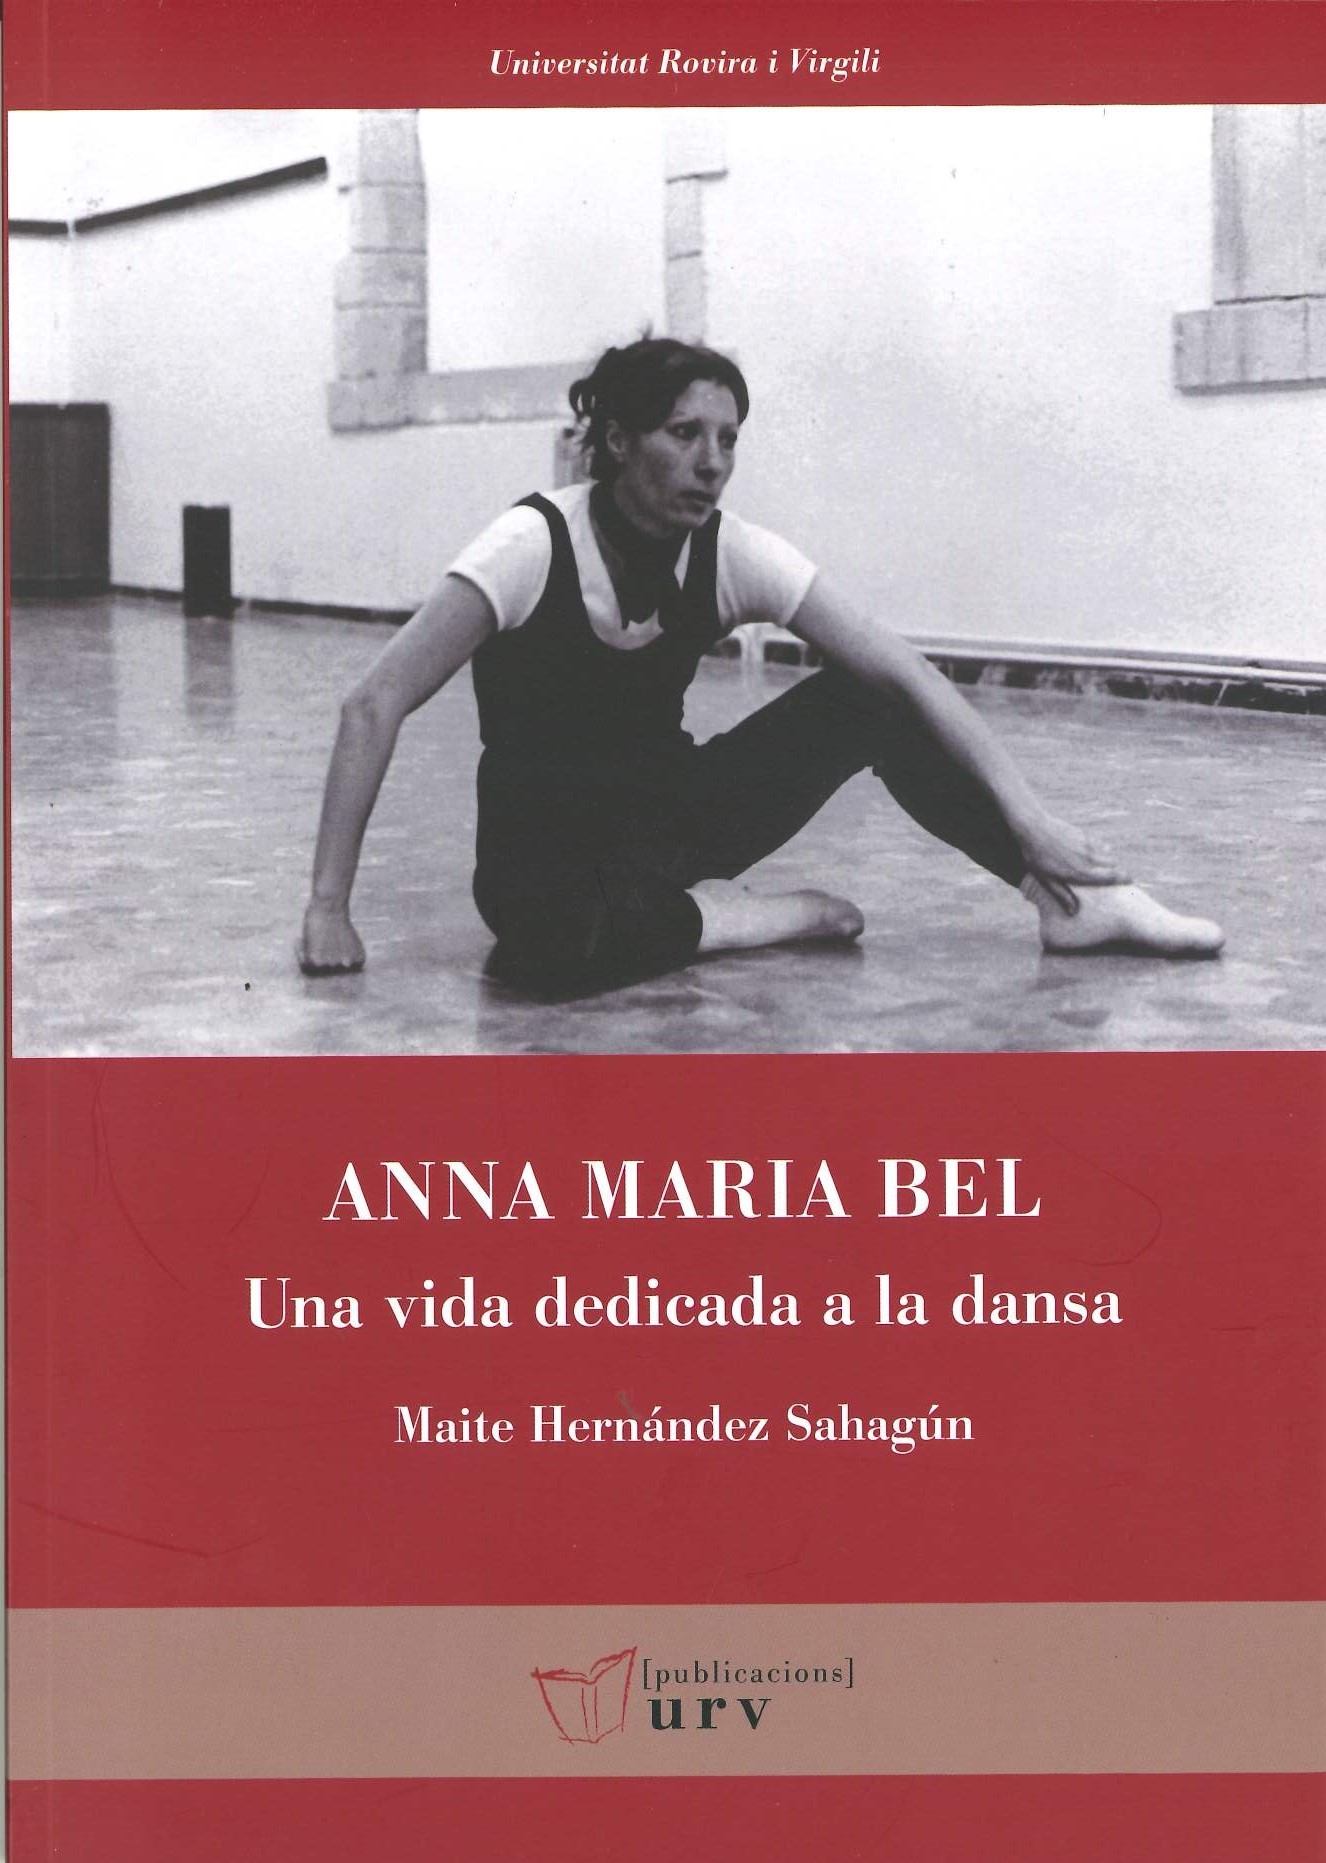 Imagen de portada del libro Anna Maria Bel